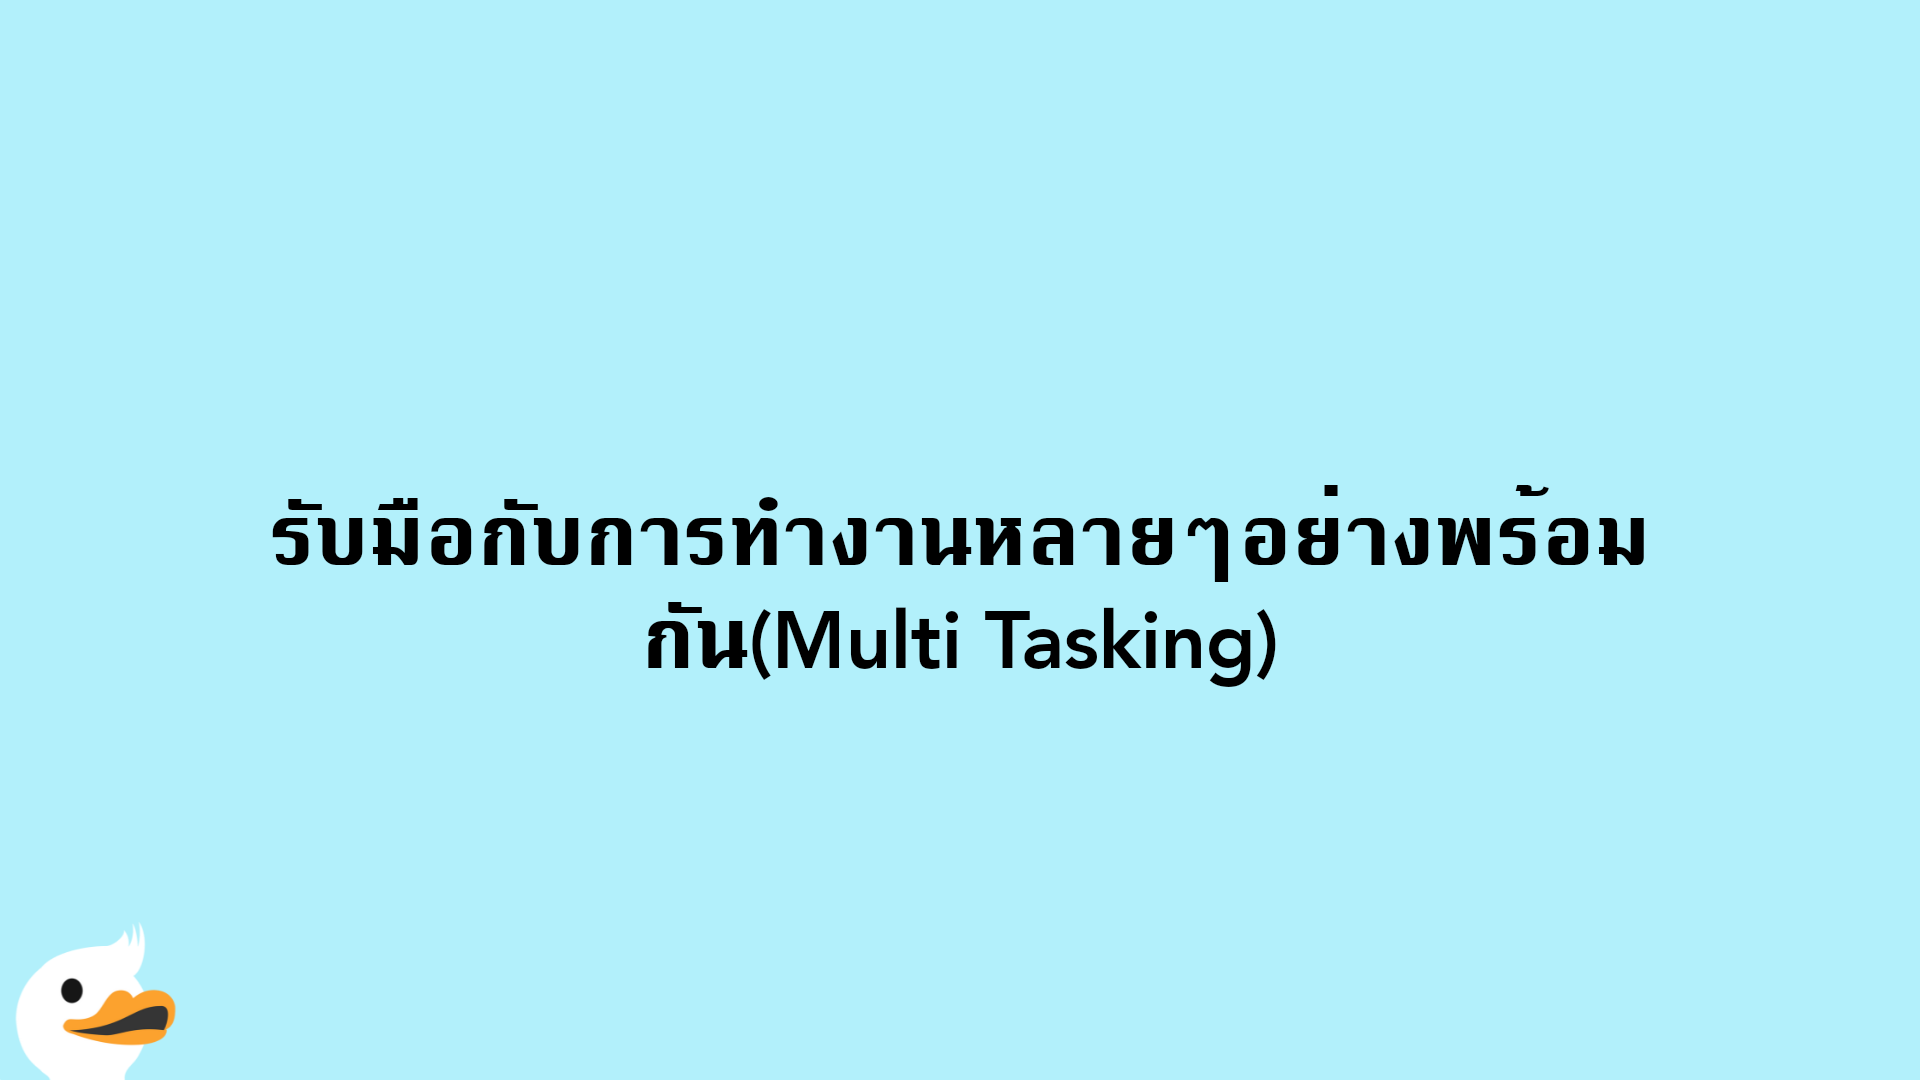 รับมือกับการทำงานหลายๆอย่างพร้อมกัน(Multi Tasking)